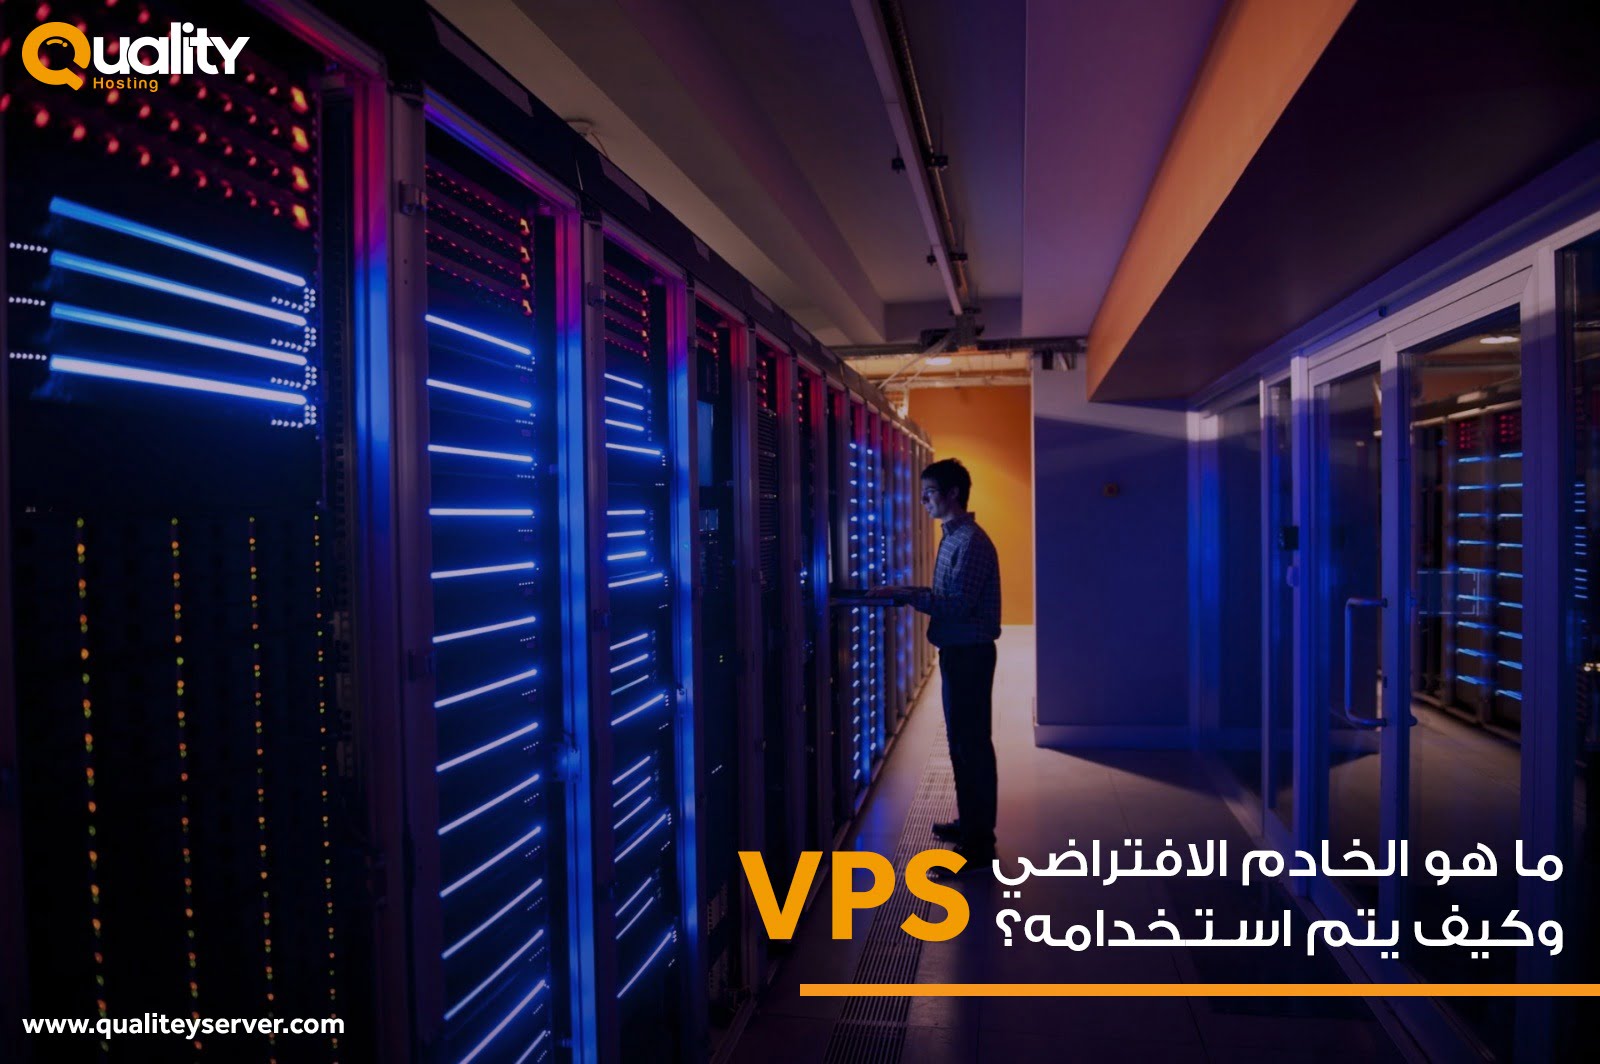 ما هو الخادم الافتراضي VPS وكيف يتم استخدامه؟